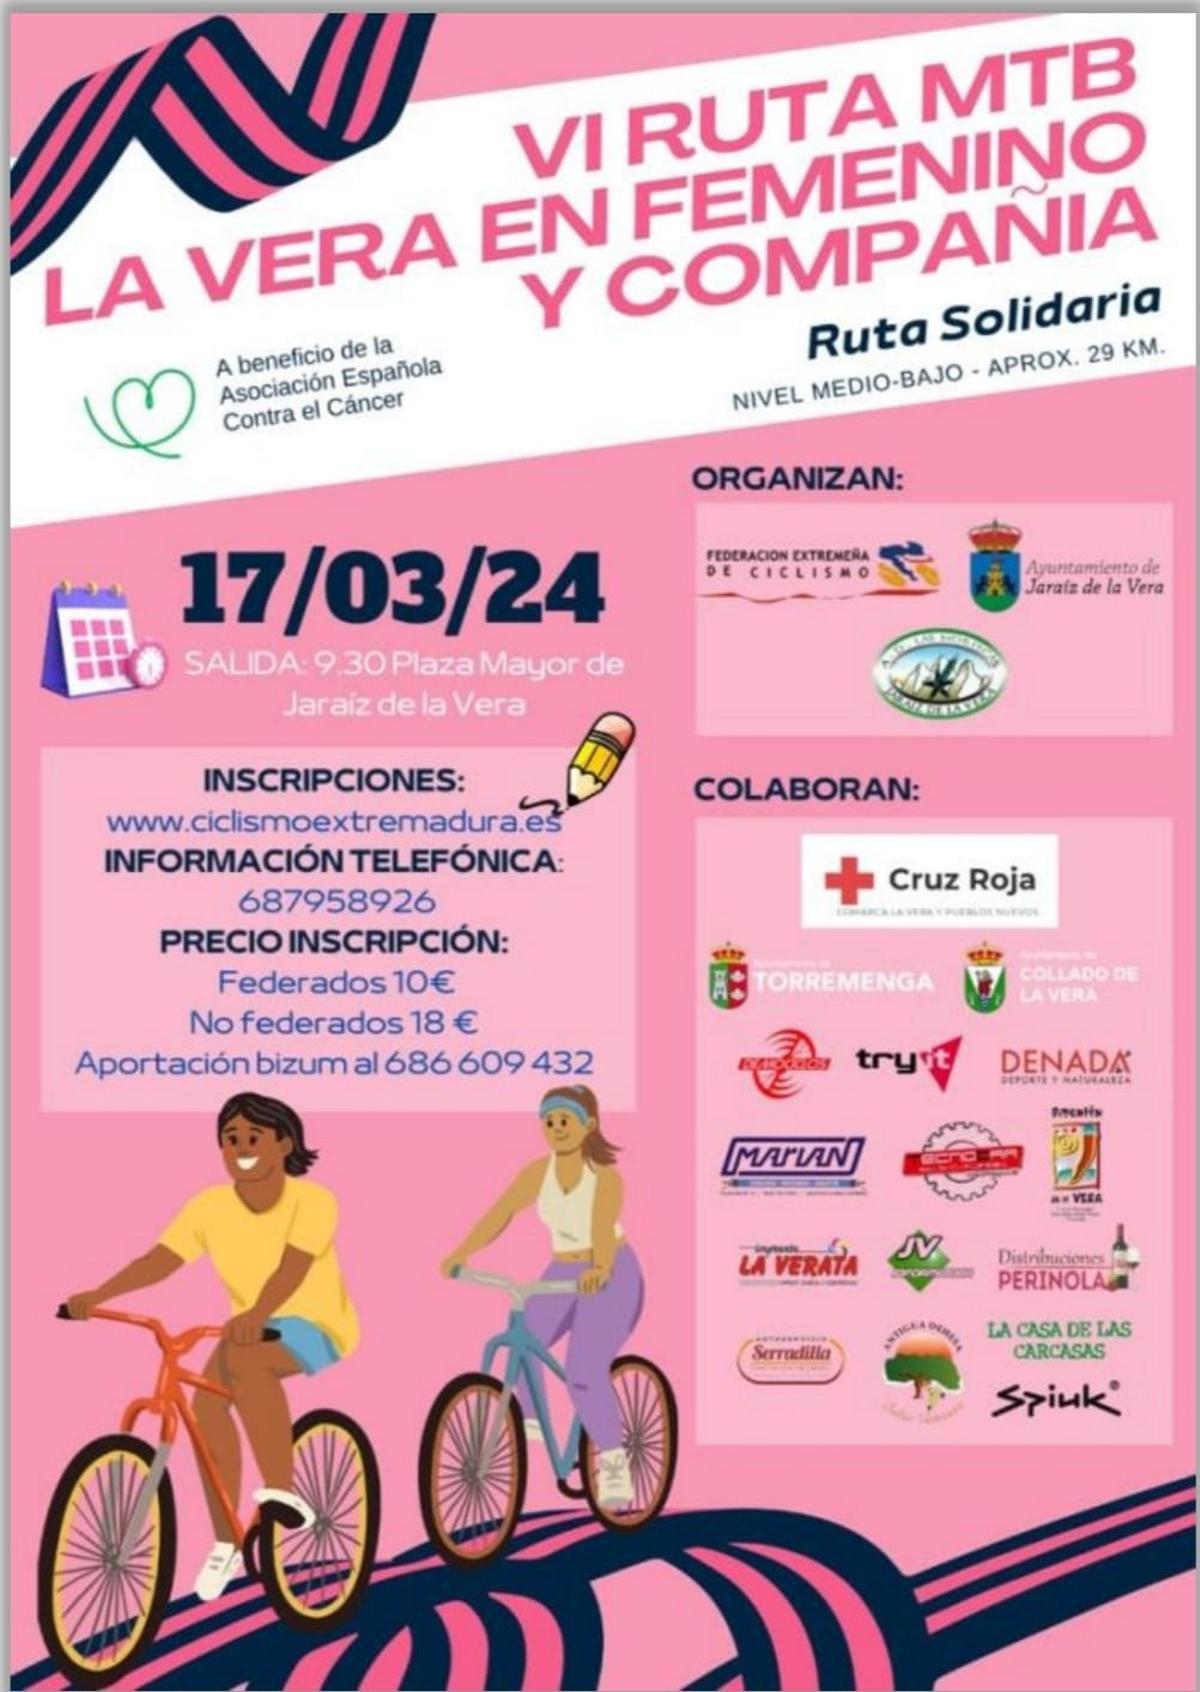 Cartel informativo sobre la ‘VI Ruta MTB La Vera en Femenino y Compañía’.